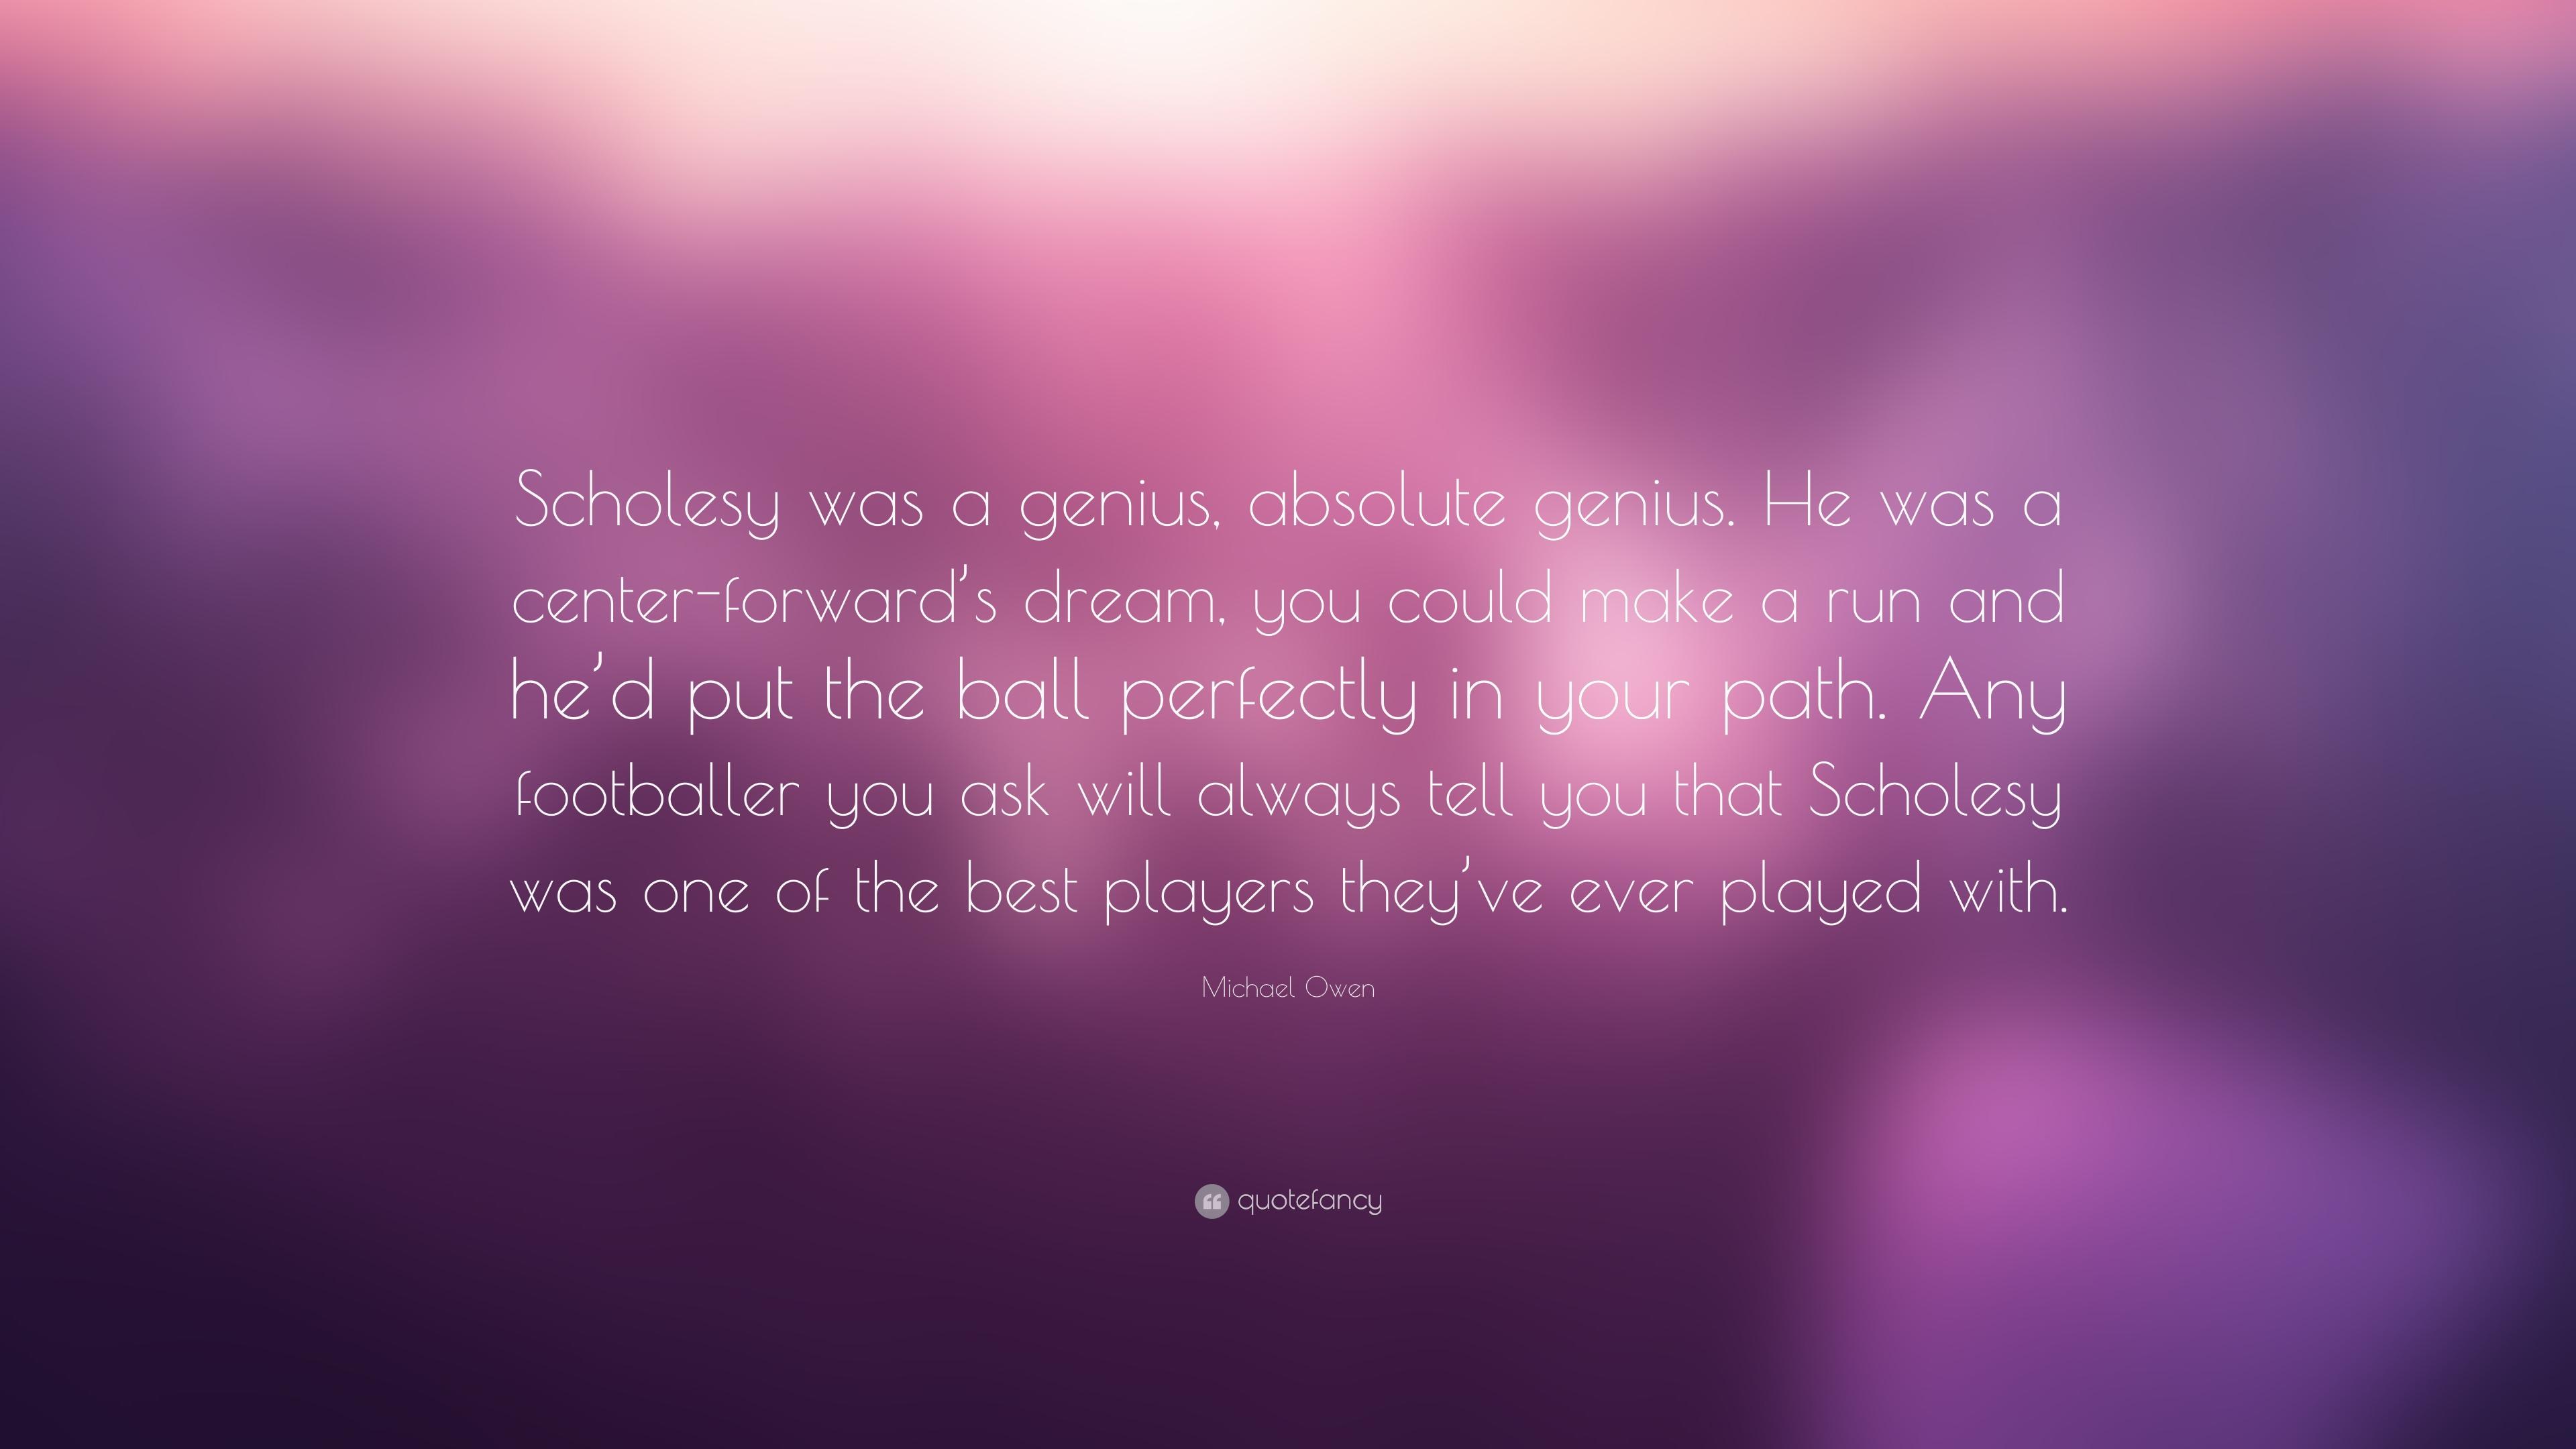 Michael Owen Quote: “Scholesy was a genius, absolute genius